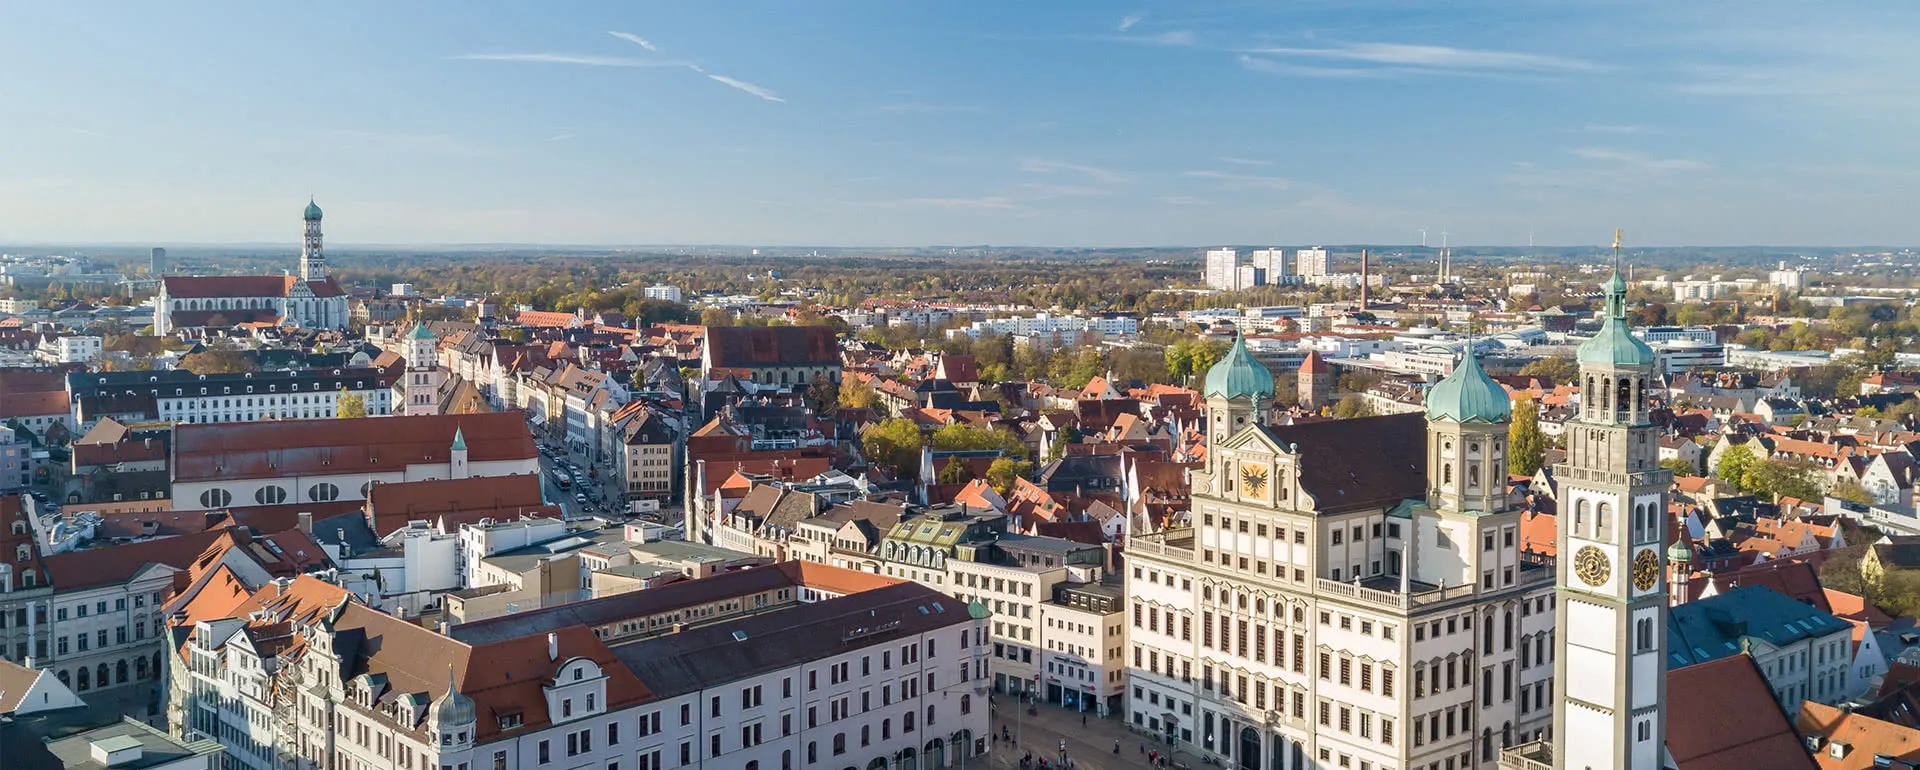 Augsburg Panorama Bild